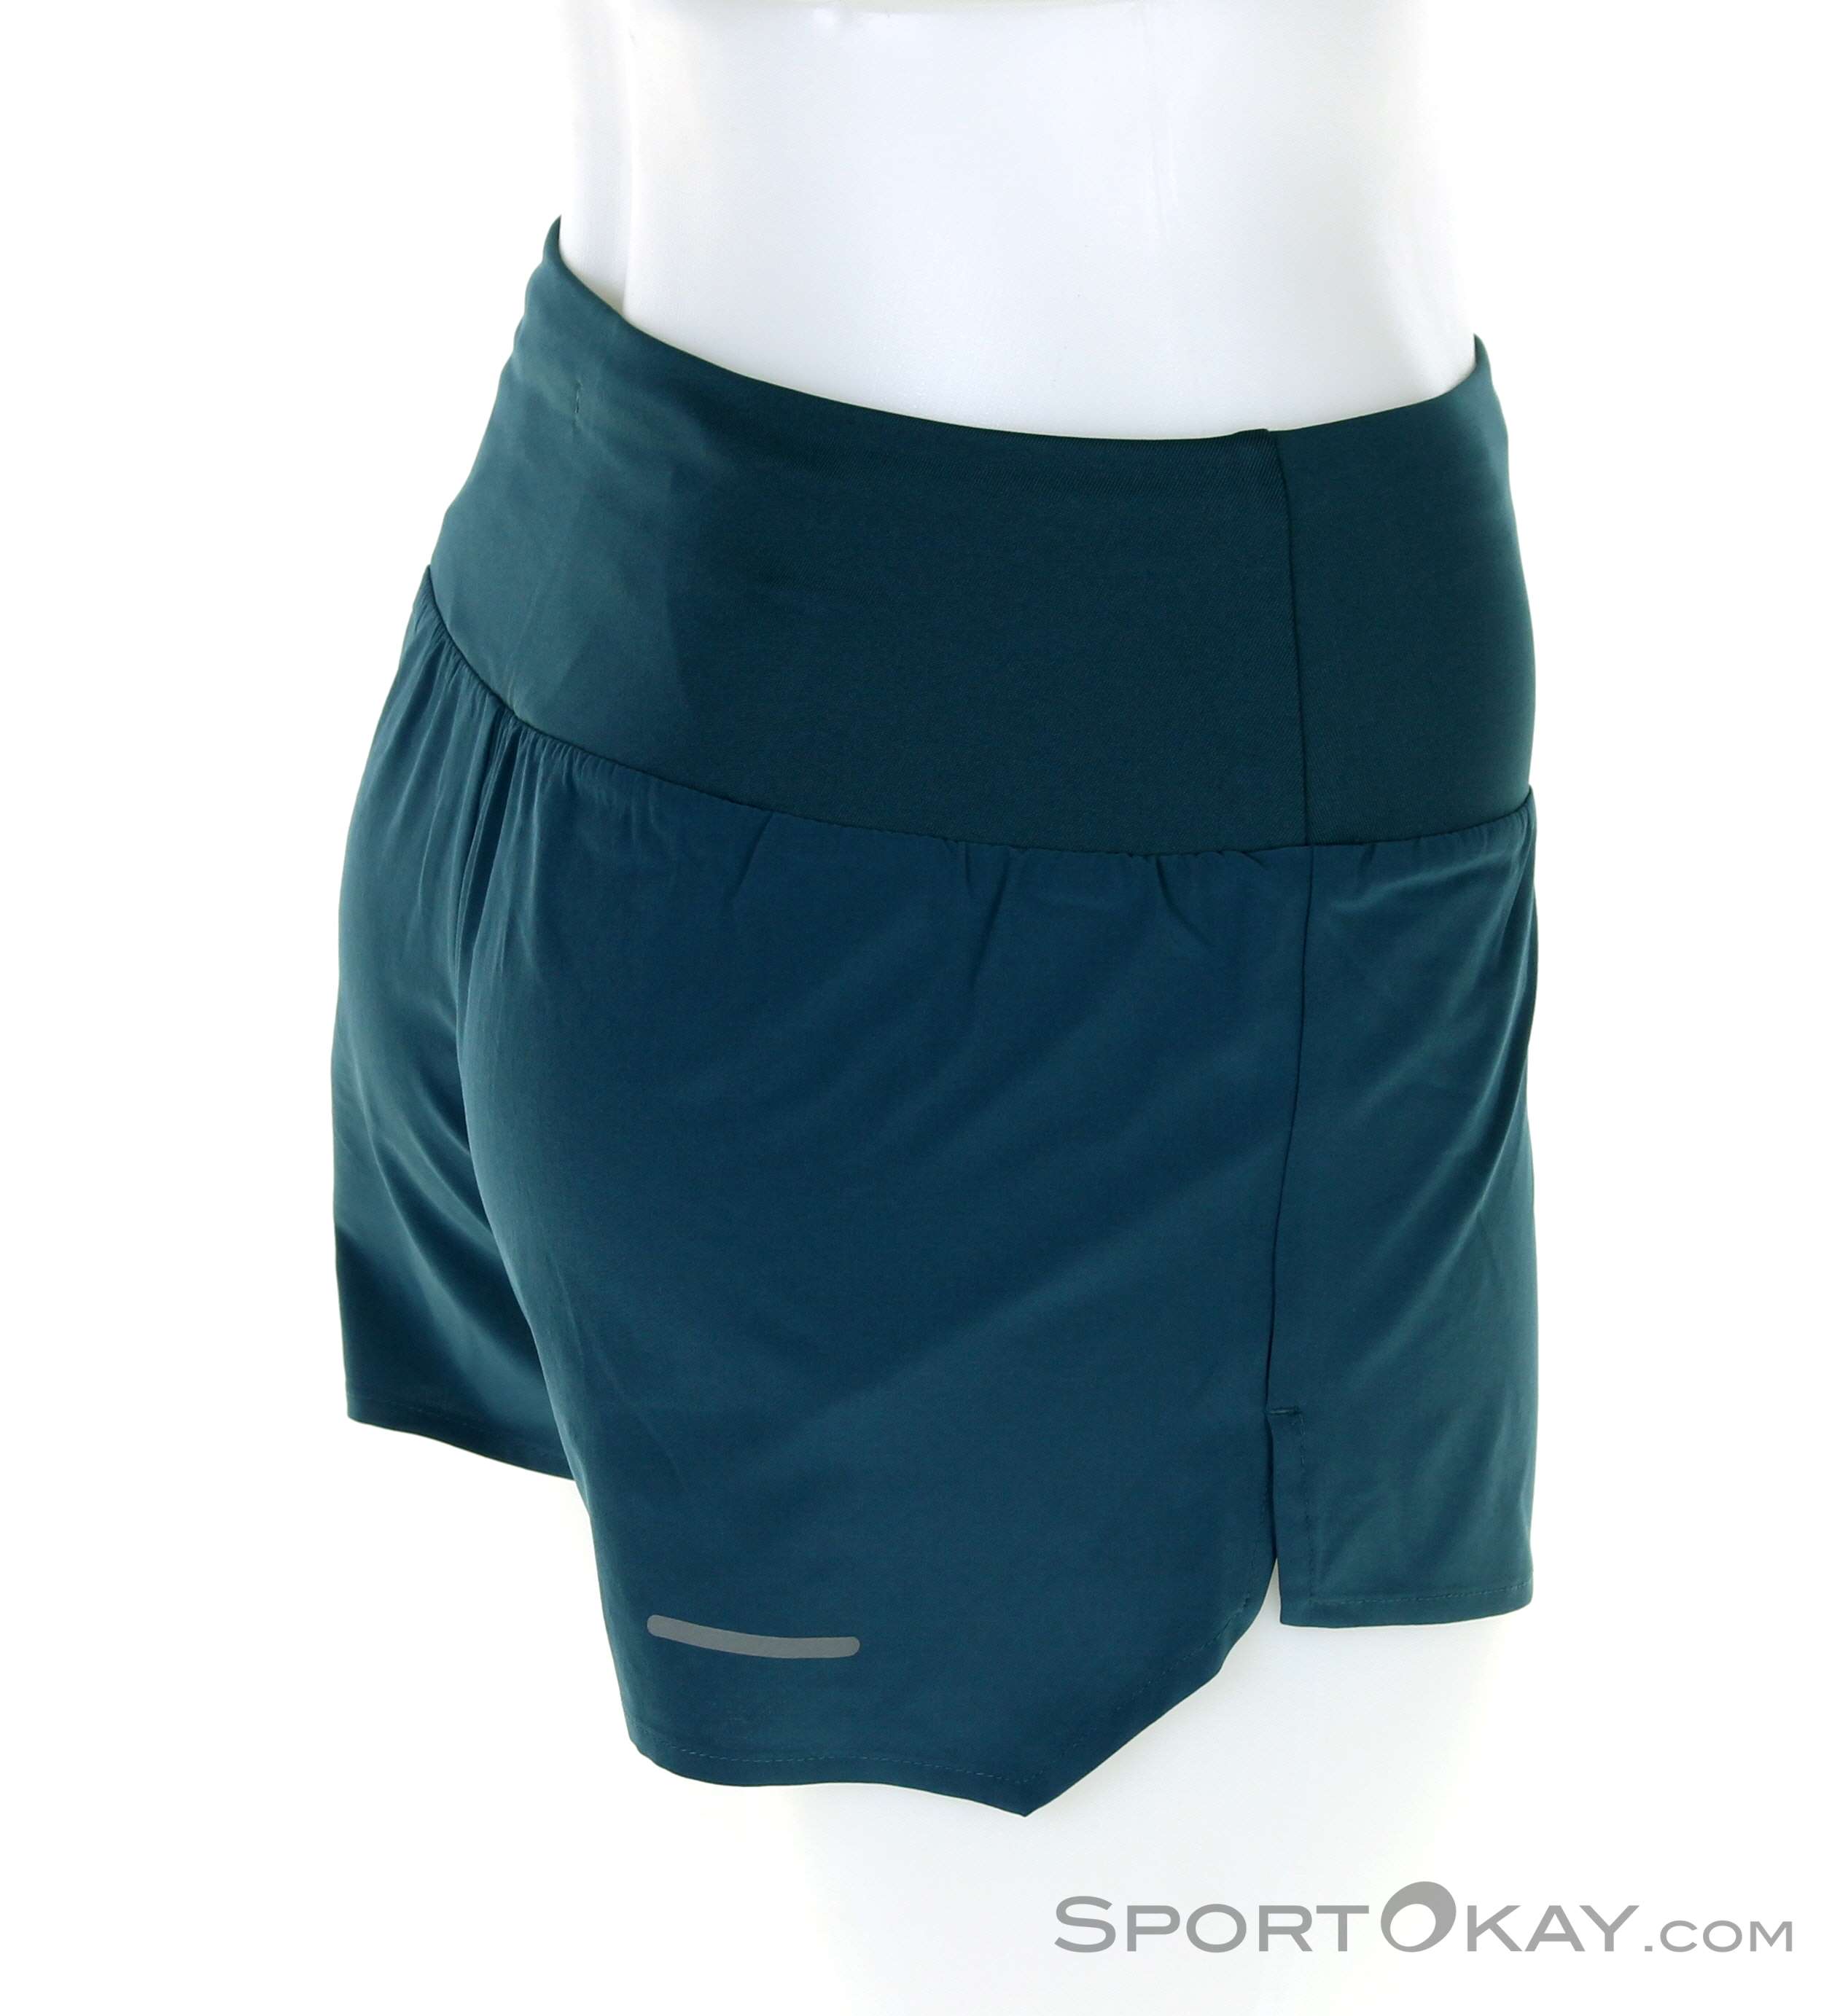 Asics Asics 3,5 All Women - Running Pants Running - Running Road in Clothing Short - Shorts 